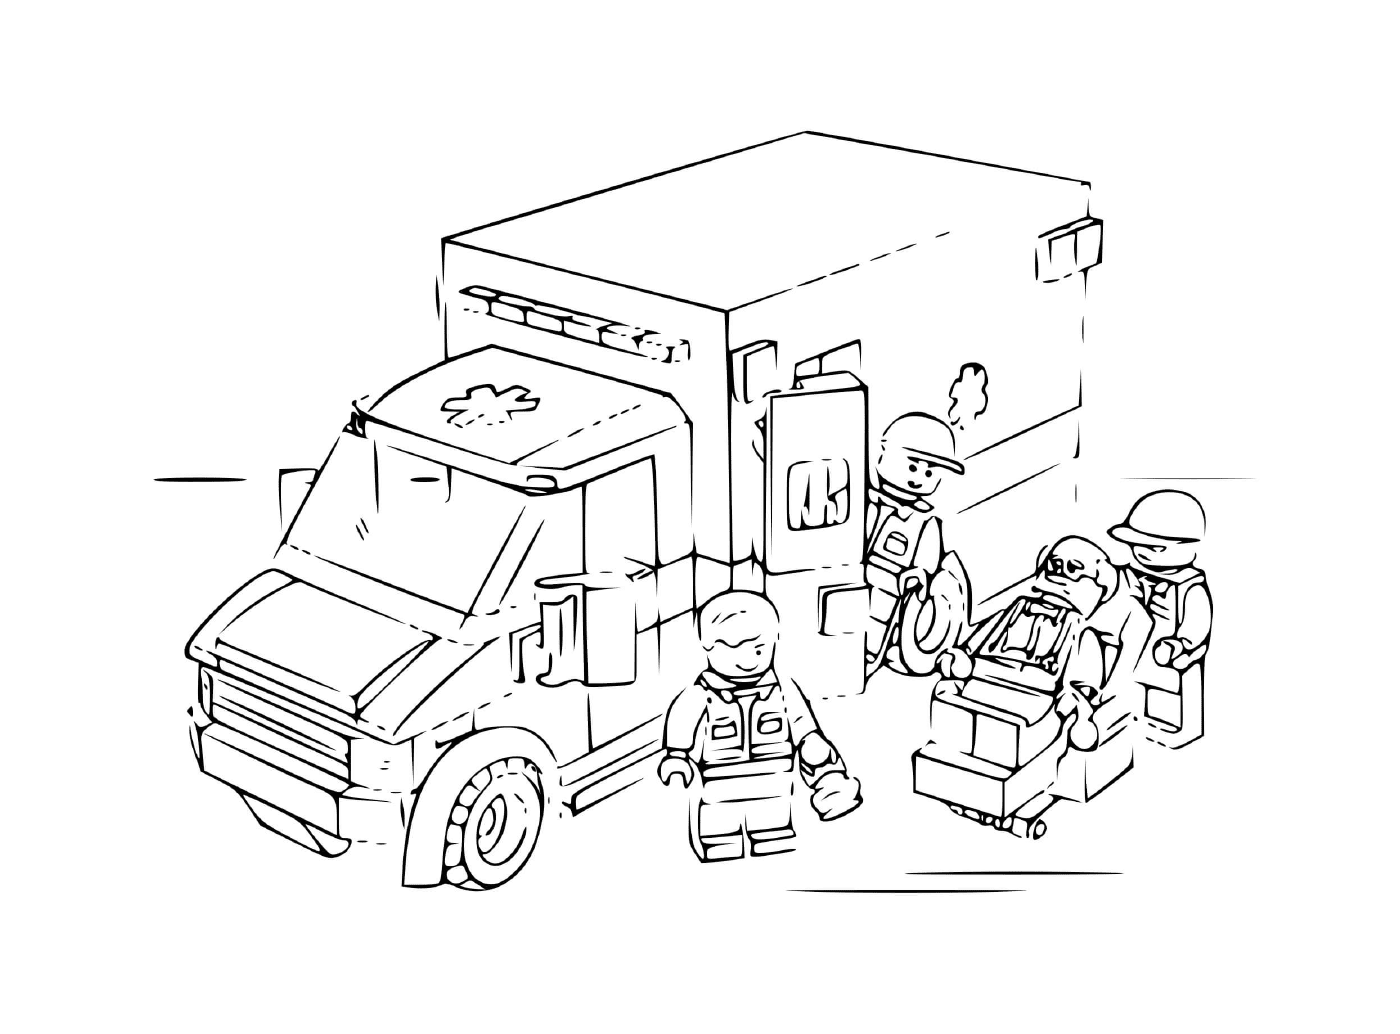  Police Lego Ambulance 